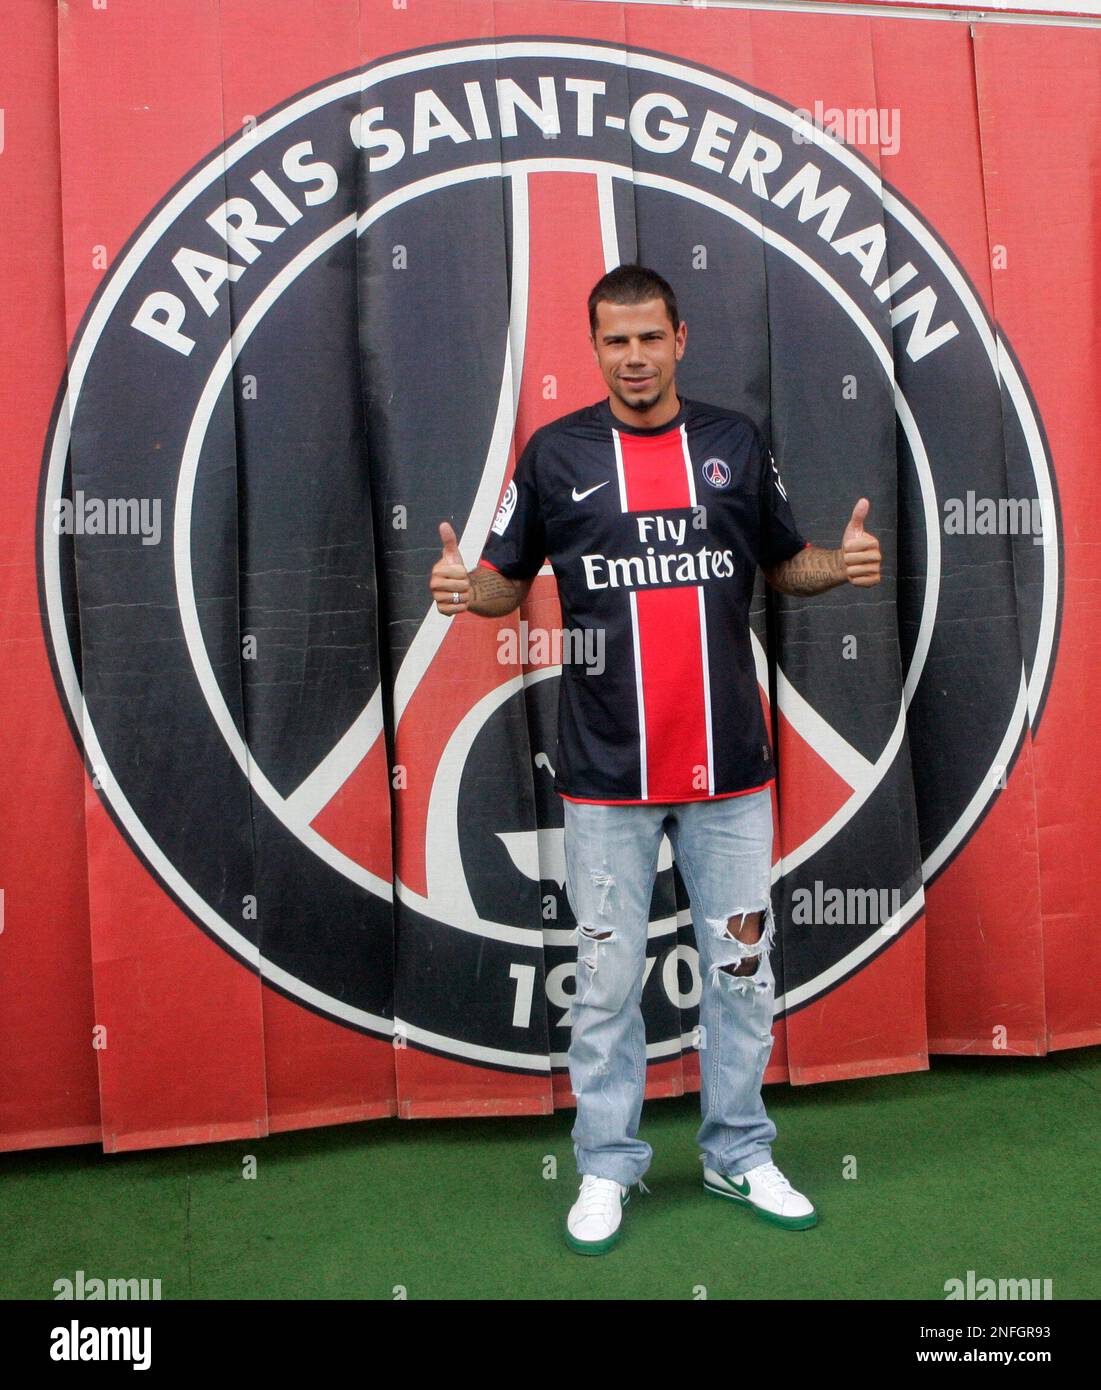 New Paris Saint Germain signing Mateja Kezman poses with his new